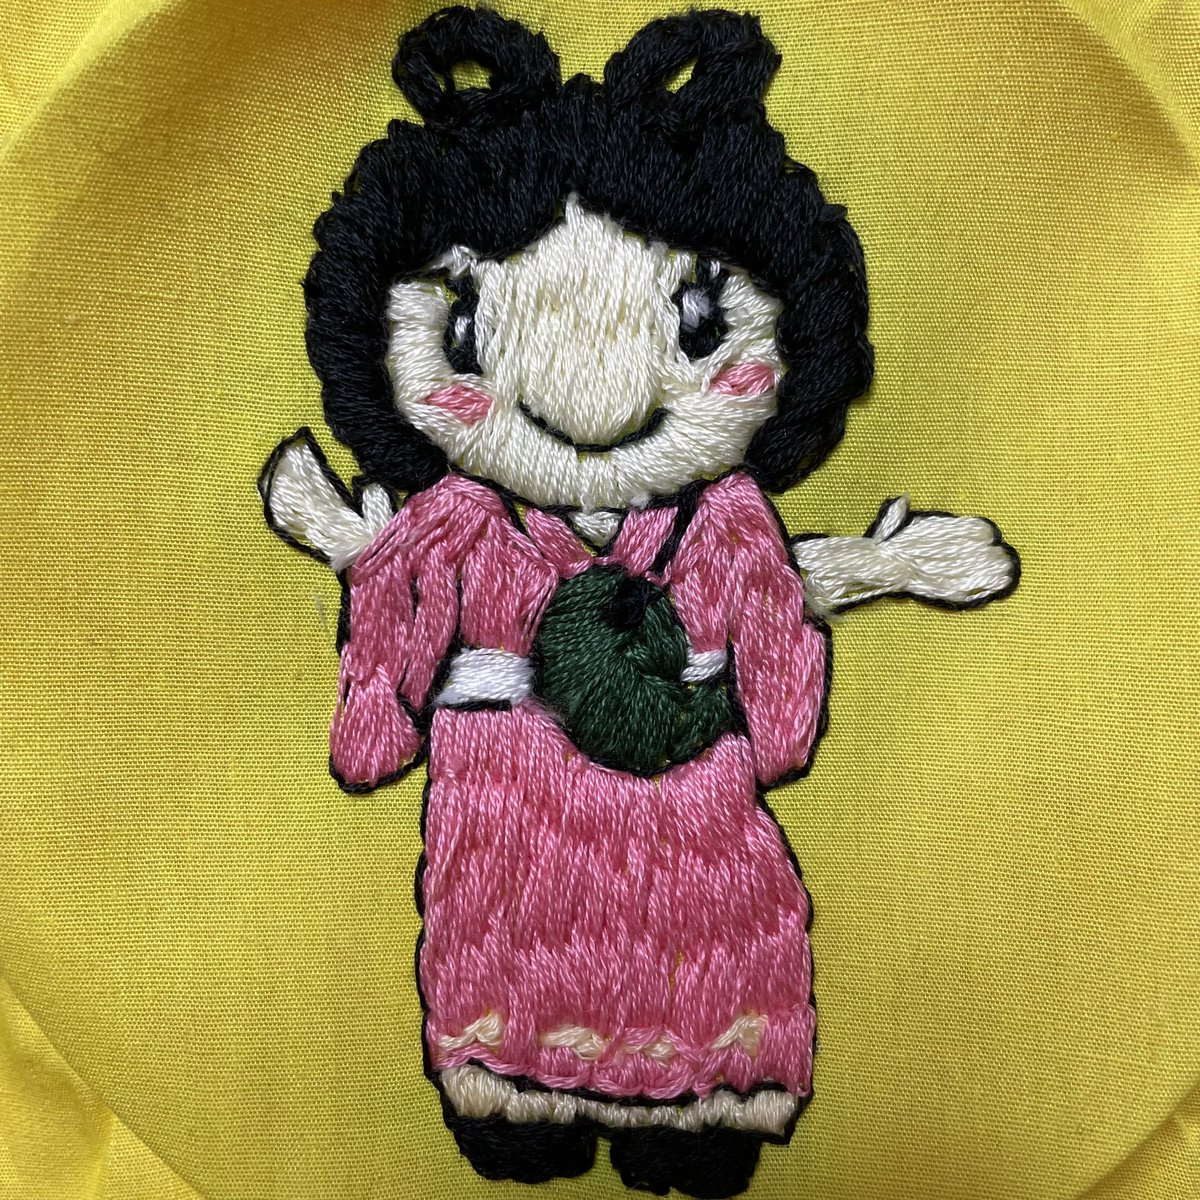 #刺繍　#フリーステッチング
#新潟県糸魚川市 #ぬーな
糸魚川ジオパークPRキャラクター。 
優しい笑顔とピンクのほっぺがかわいぬーなは糸魚川の伝説のお姫様
大きなひすいの勾玉を持ち
訪れる人々の笑顔を願っています。